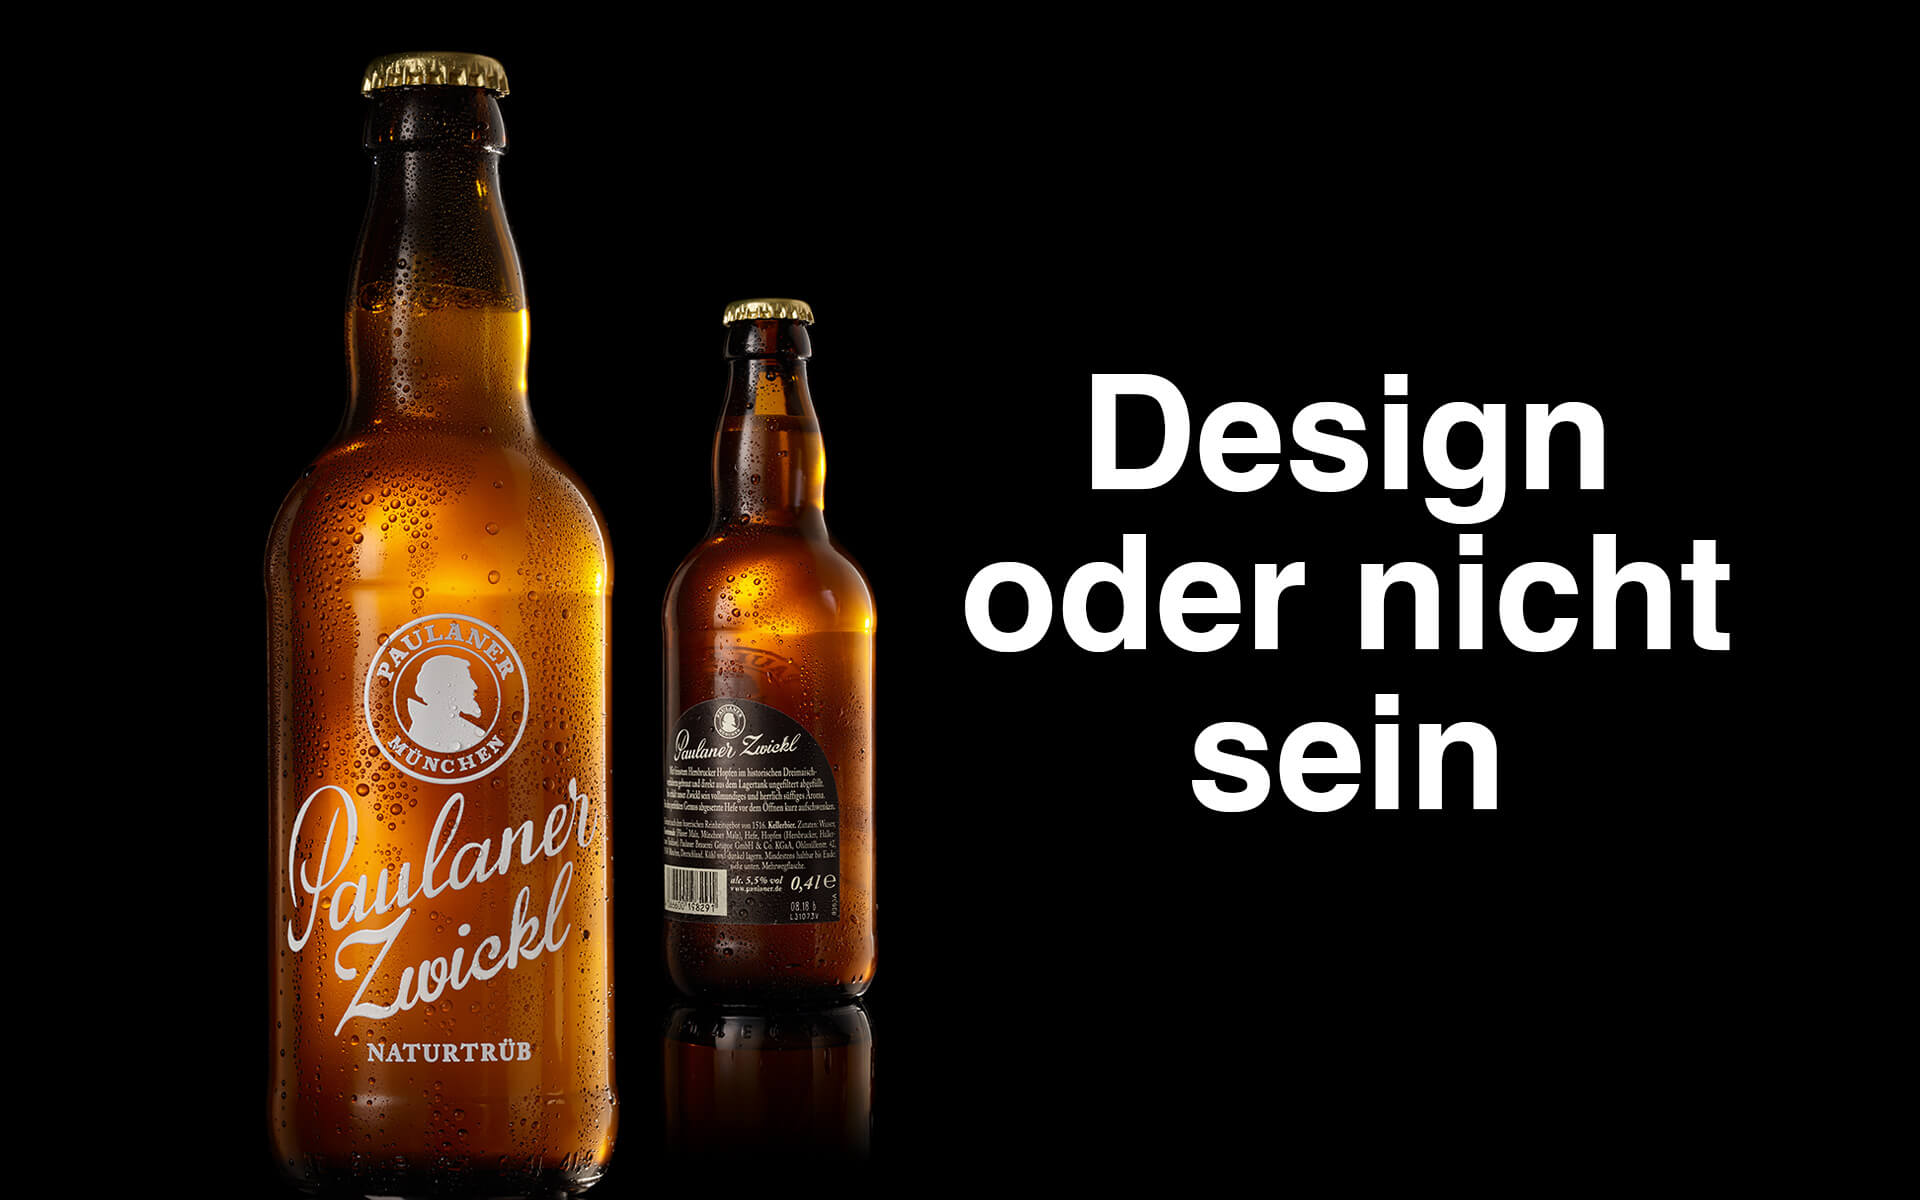 nju communications – Paulaner Zwickl Bier-Flaschen mit Keramik-Direktdruck